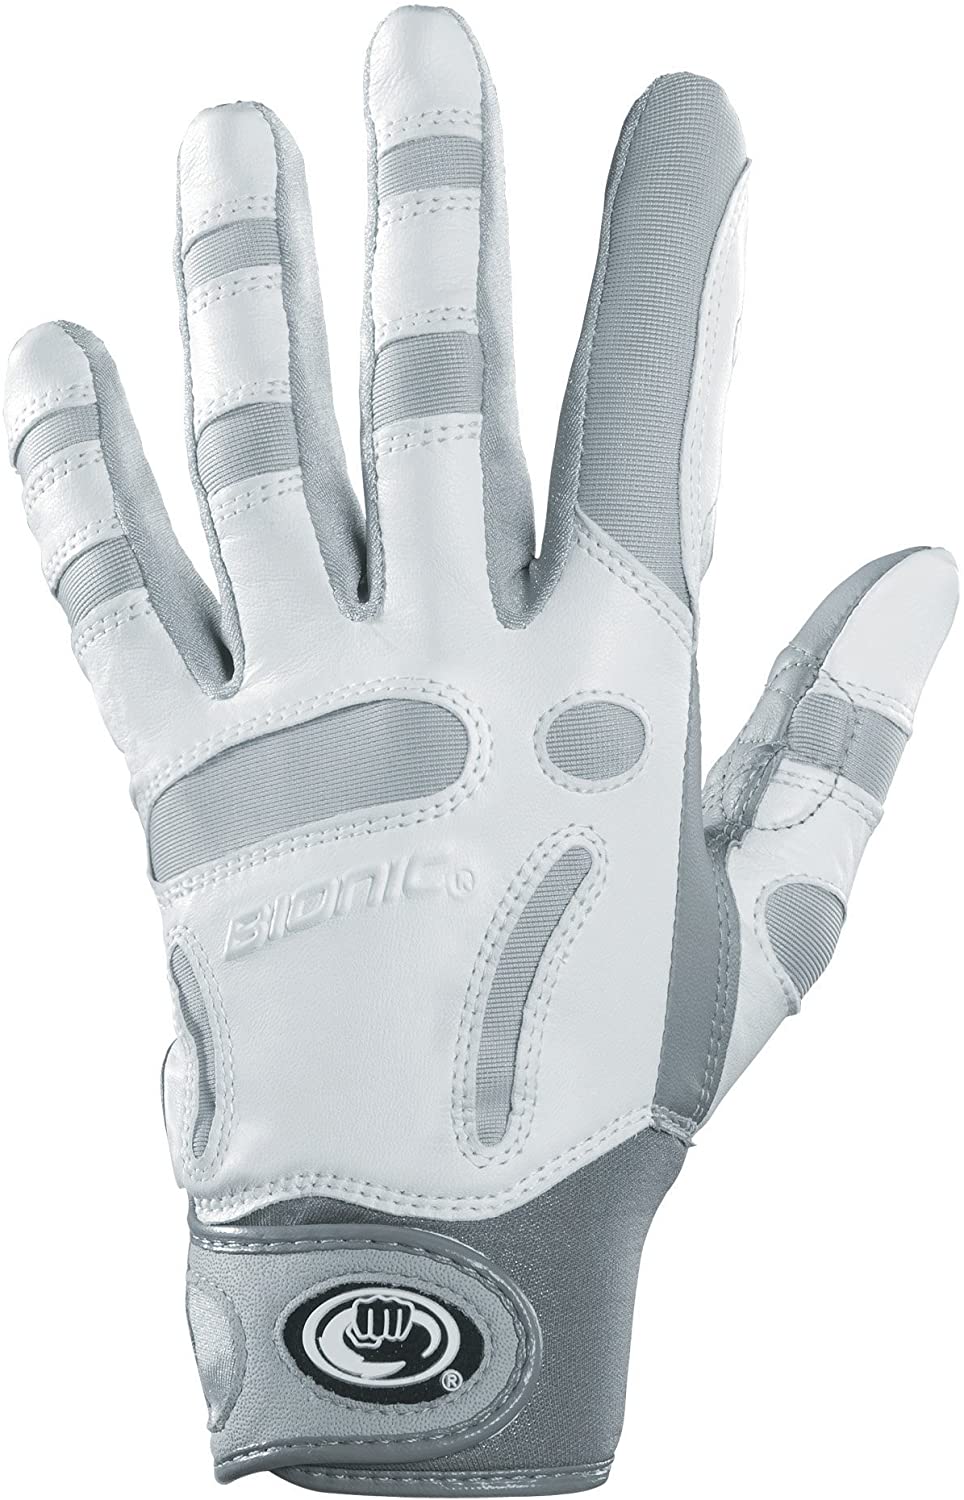 best golf glove for arthritic hands